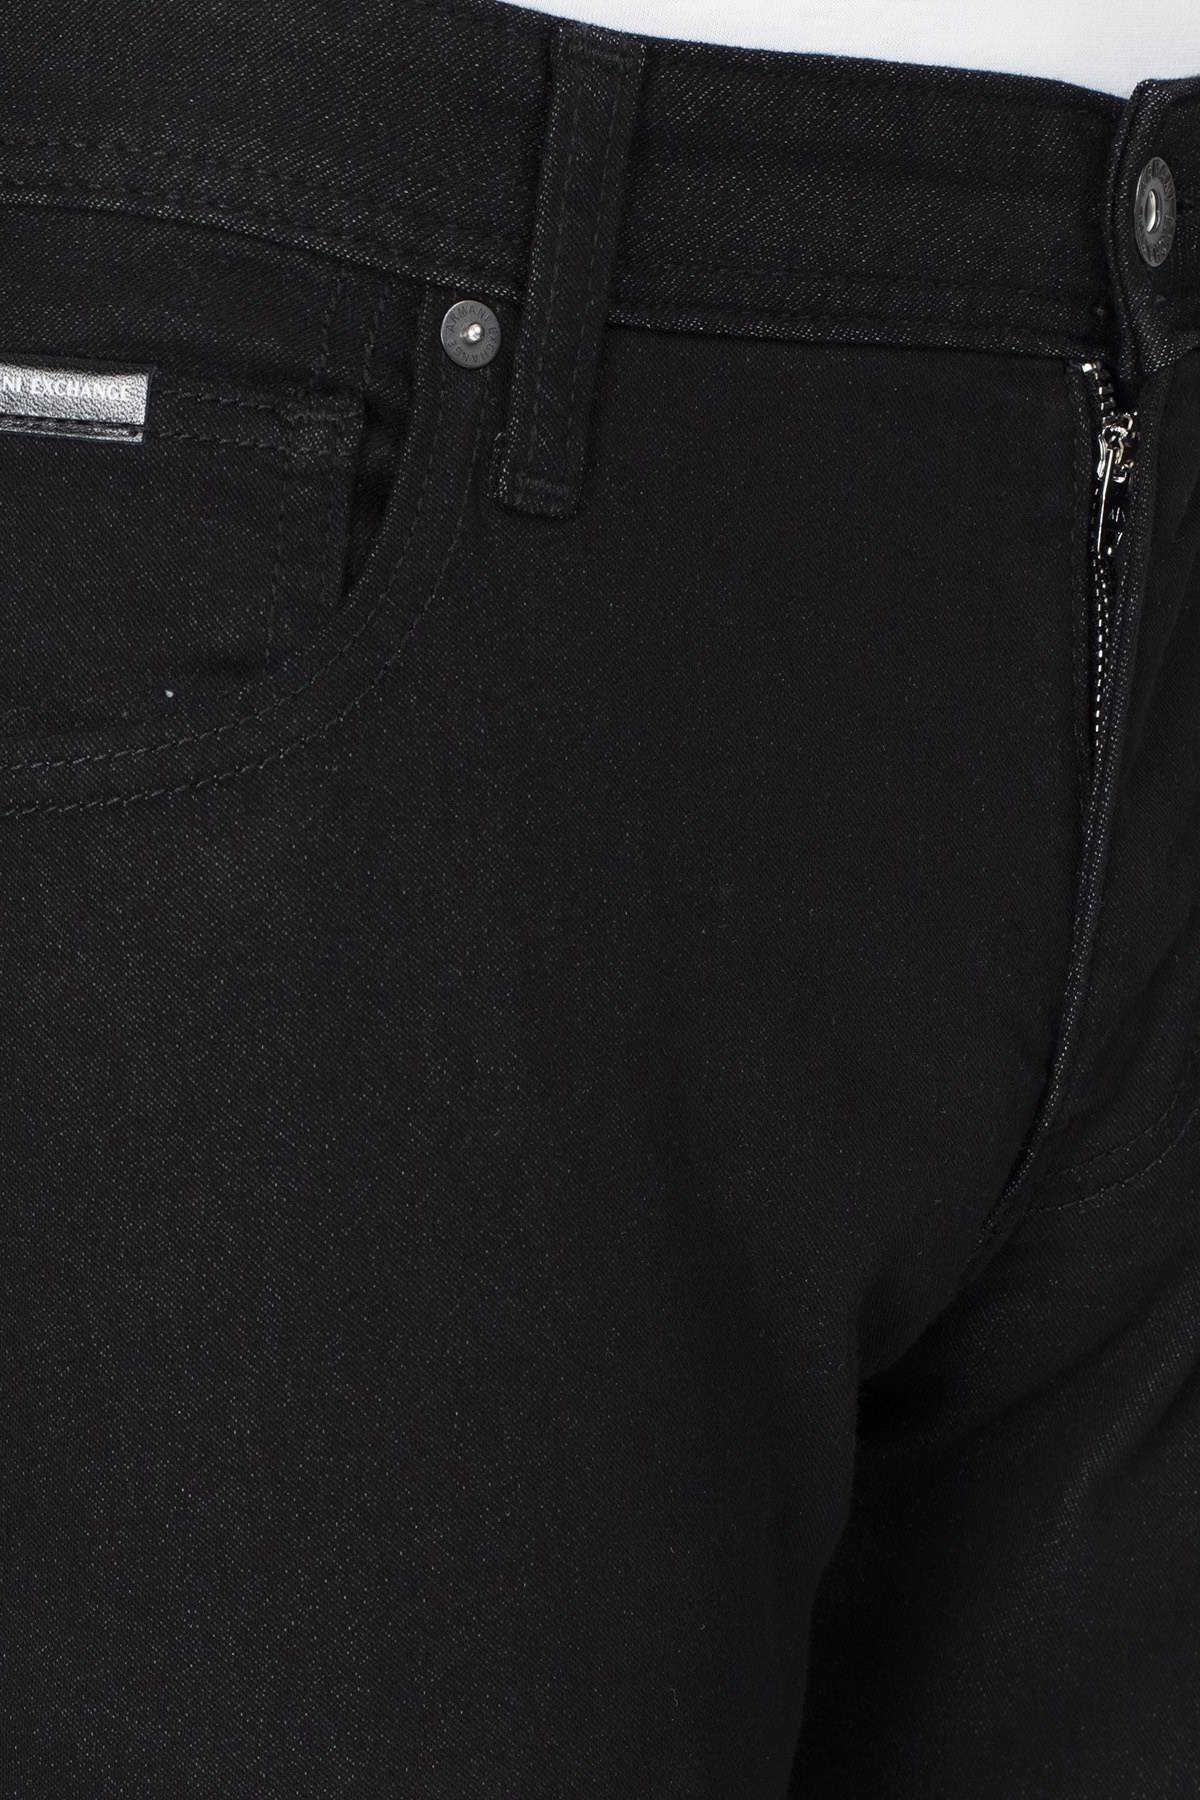 Armani Exchange J14 Jeans Erkek Kot Pantolon 3HZJ14 ZNGGZ 1200 SİYAH